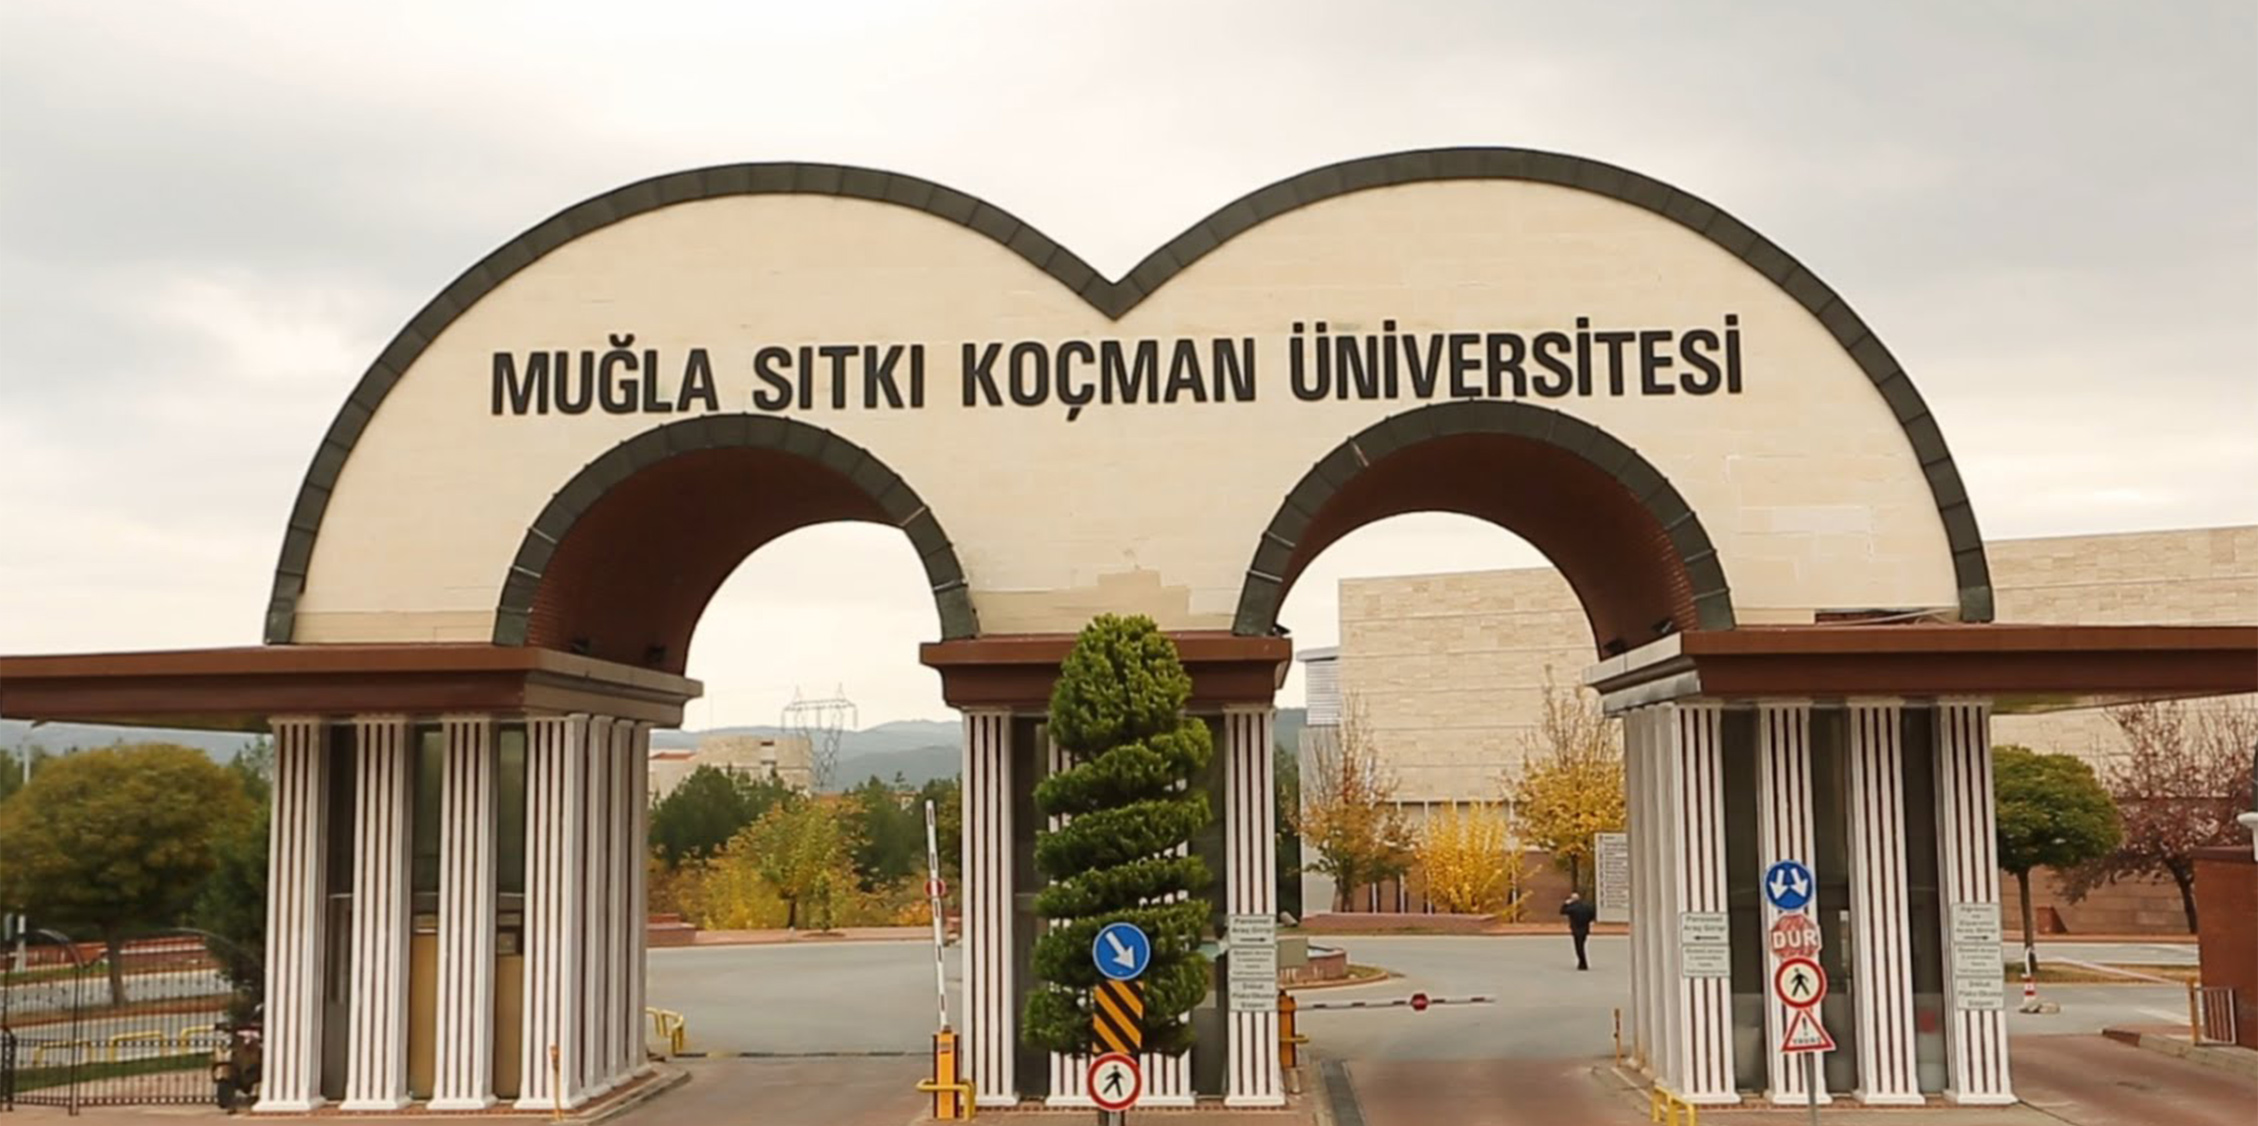 muglasitki universitesi find and study 1 - Muğla Sıtkı Koçman Üniversitesi